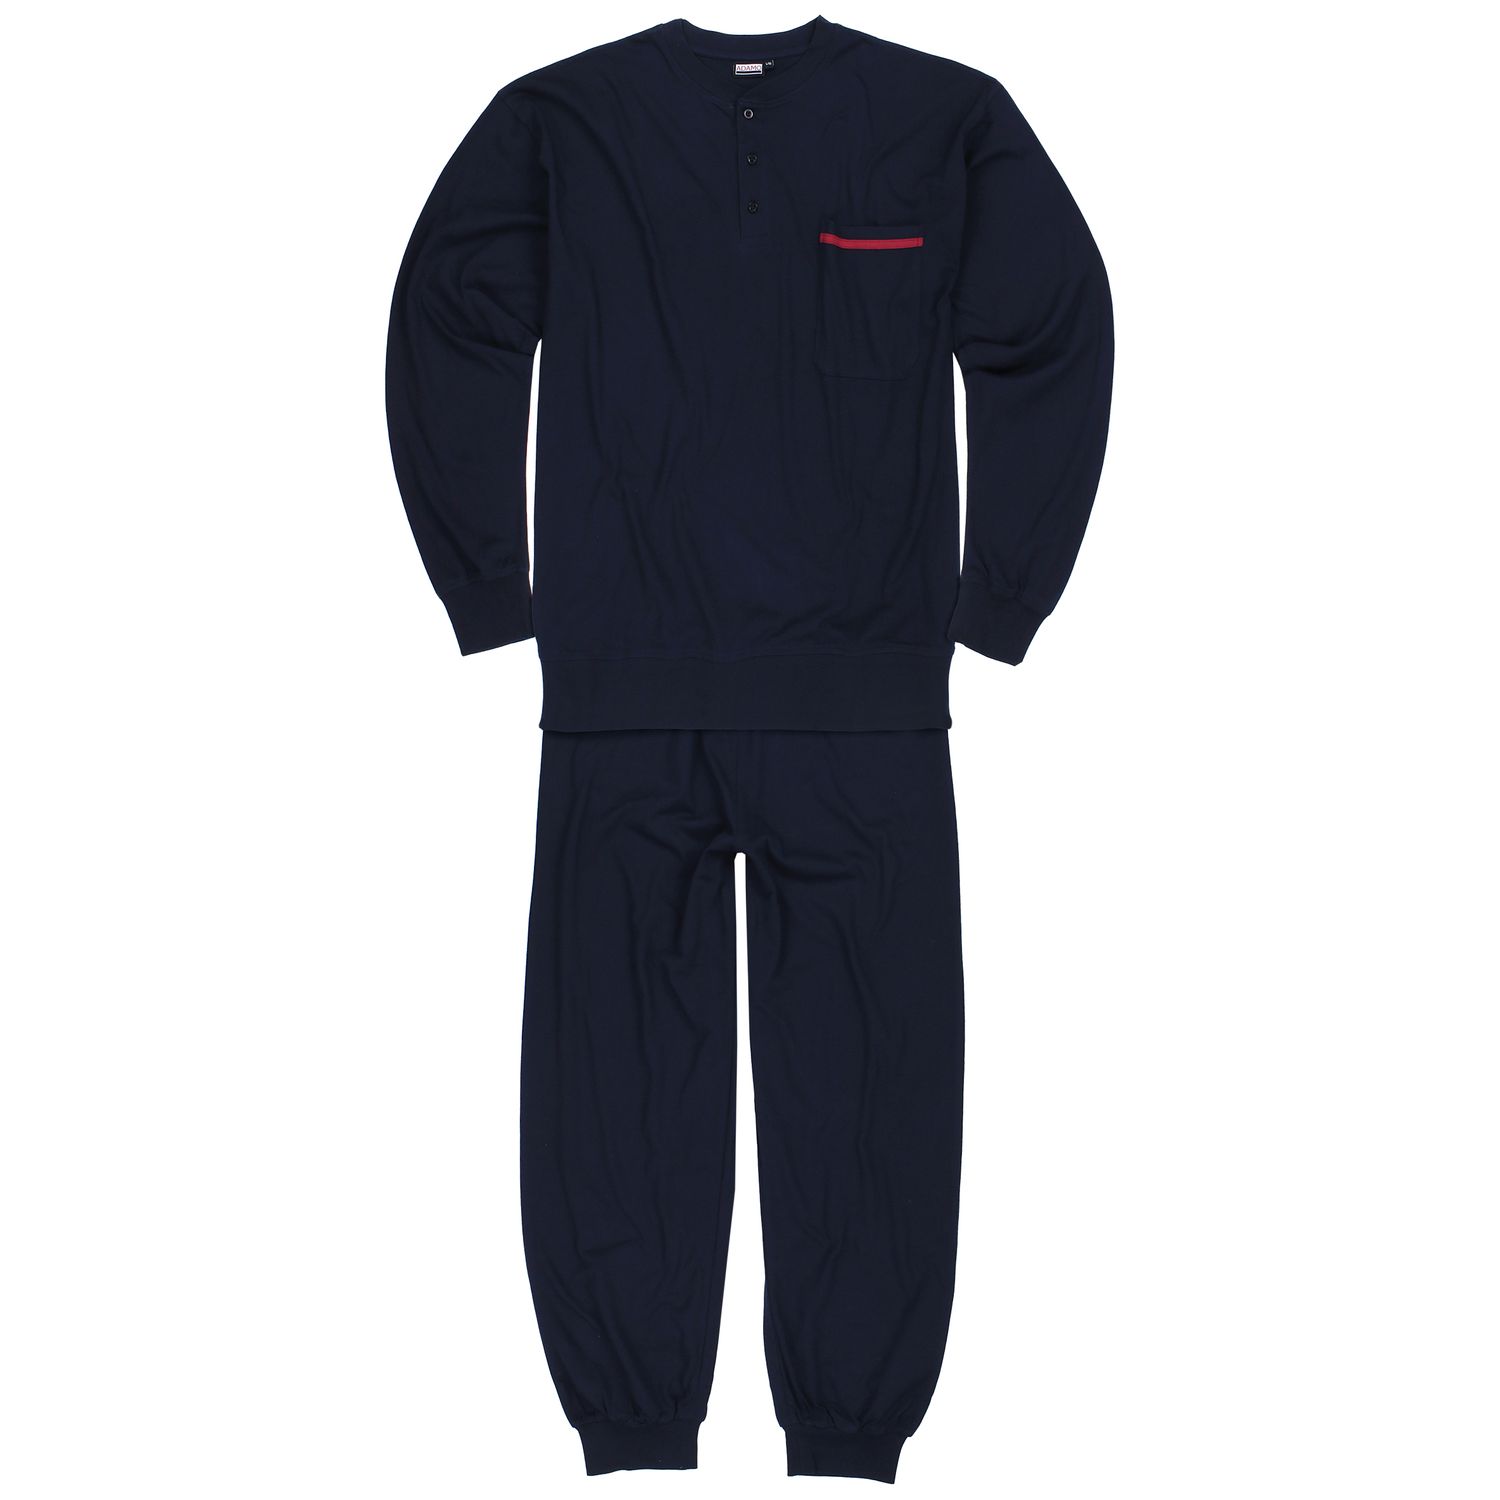 Langer Herren Pyjama mit Bündchen und Knopfleiste in navy Serie Brian von Adamo bis Übergröße 10XL